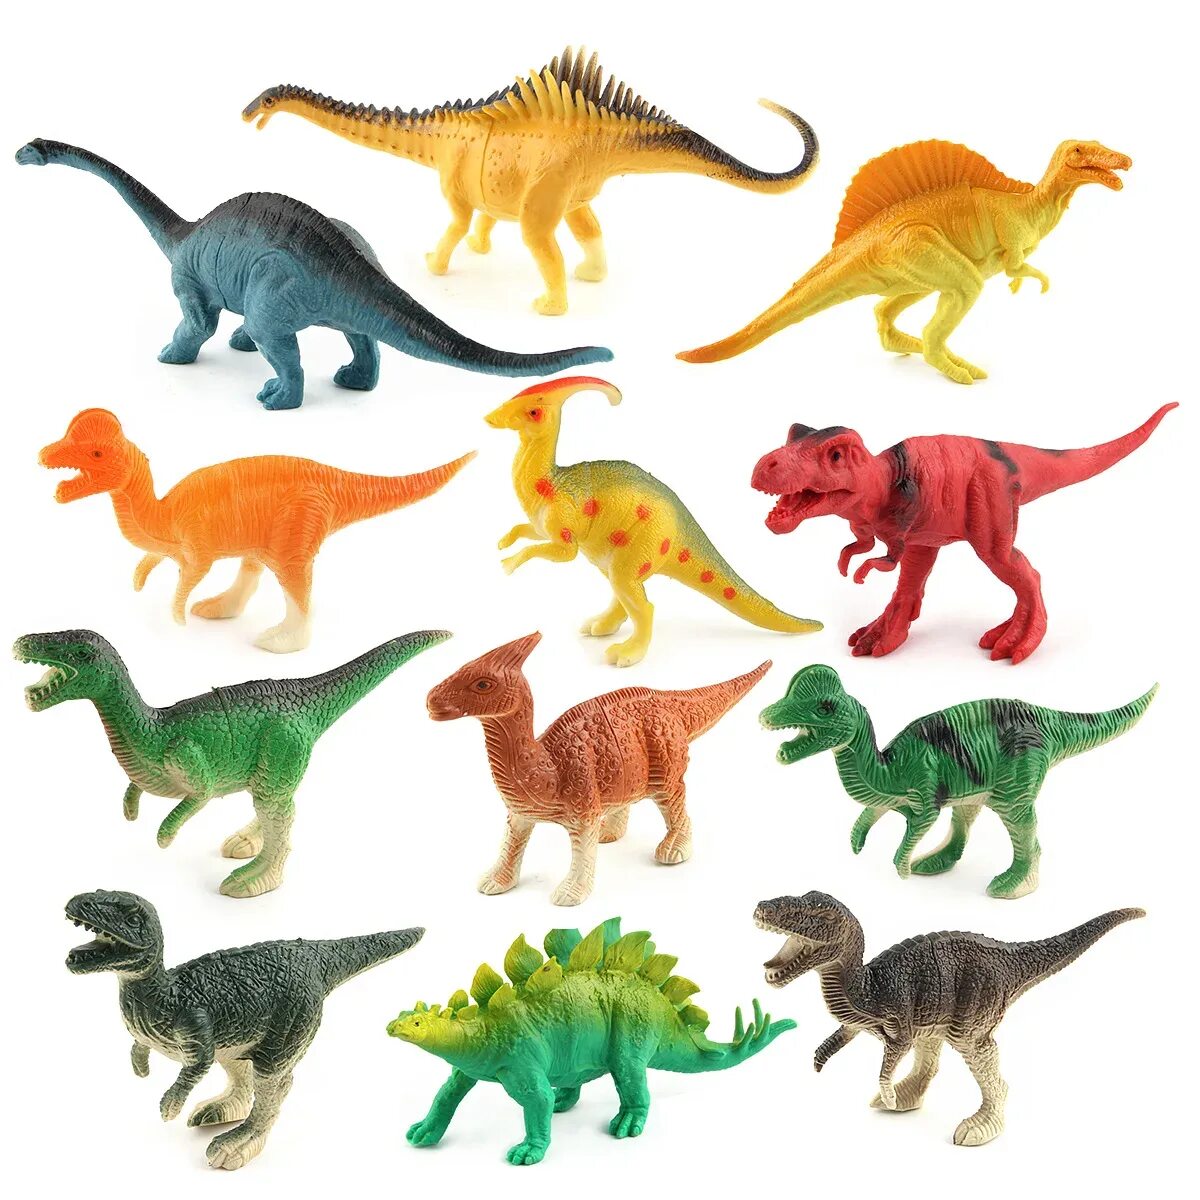 Игрушка динозавр. Коллекция игрушечных динозавров. Набор игрушечных динозавров. Динозавры игрушки коллекция. Динозавры сборник